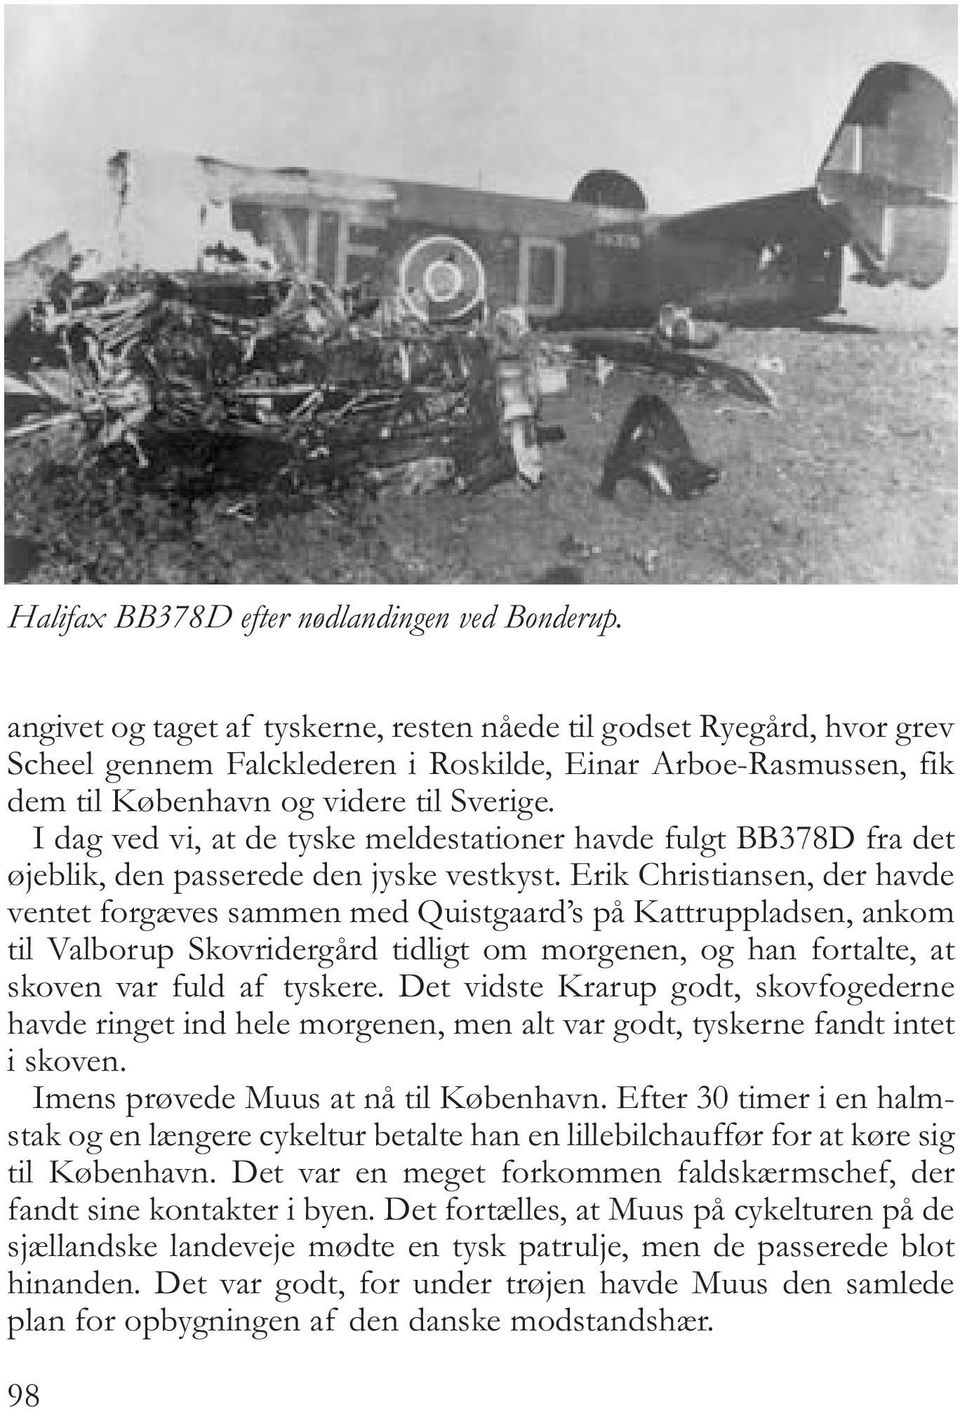 I dag ved vi, at de tyske meldestationer havde fulgt BB378D fra det øjeblik, den passerede den jyske vestkyst.